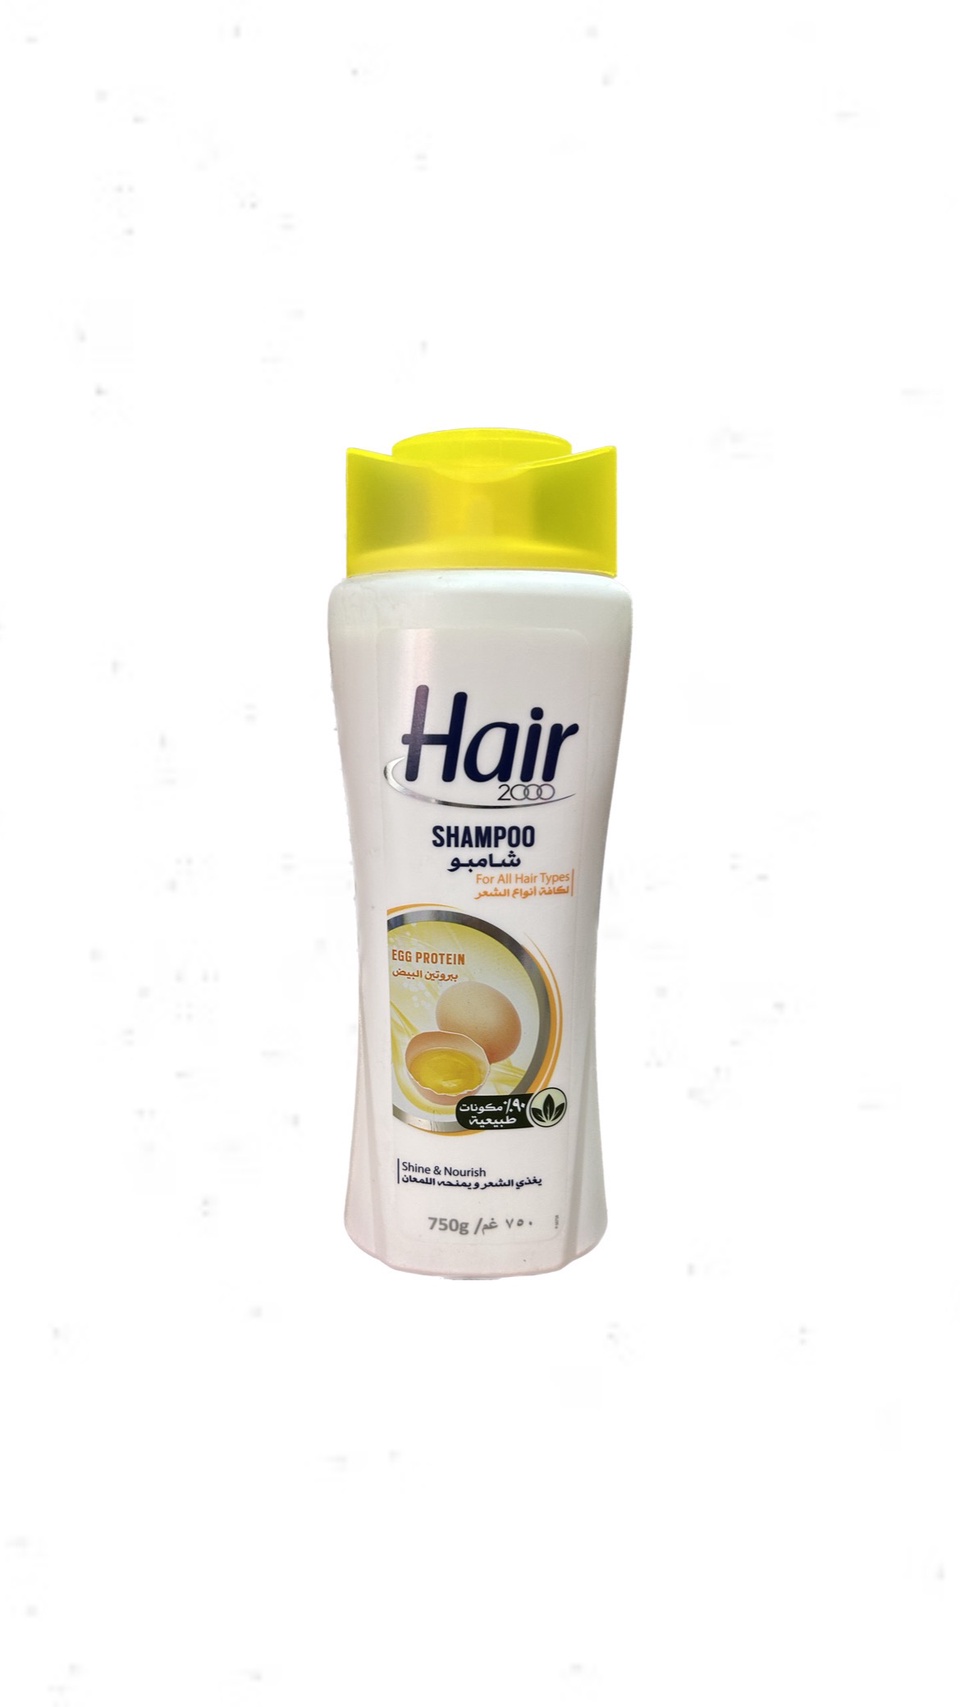 Шампунь Hair для всех типов волос с яичным желтком 750 мл - 300 ₽, заказать онлайн.